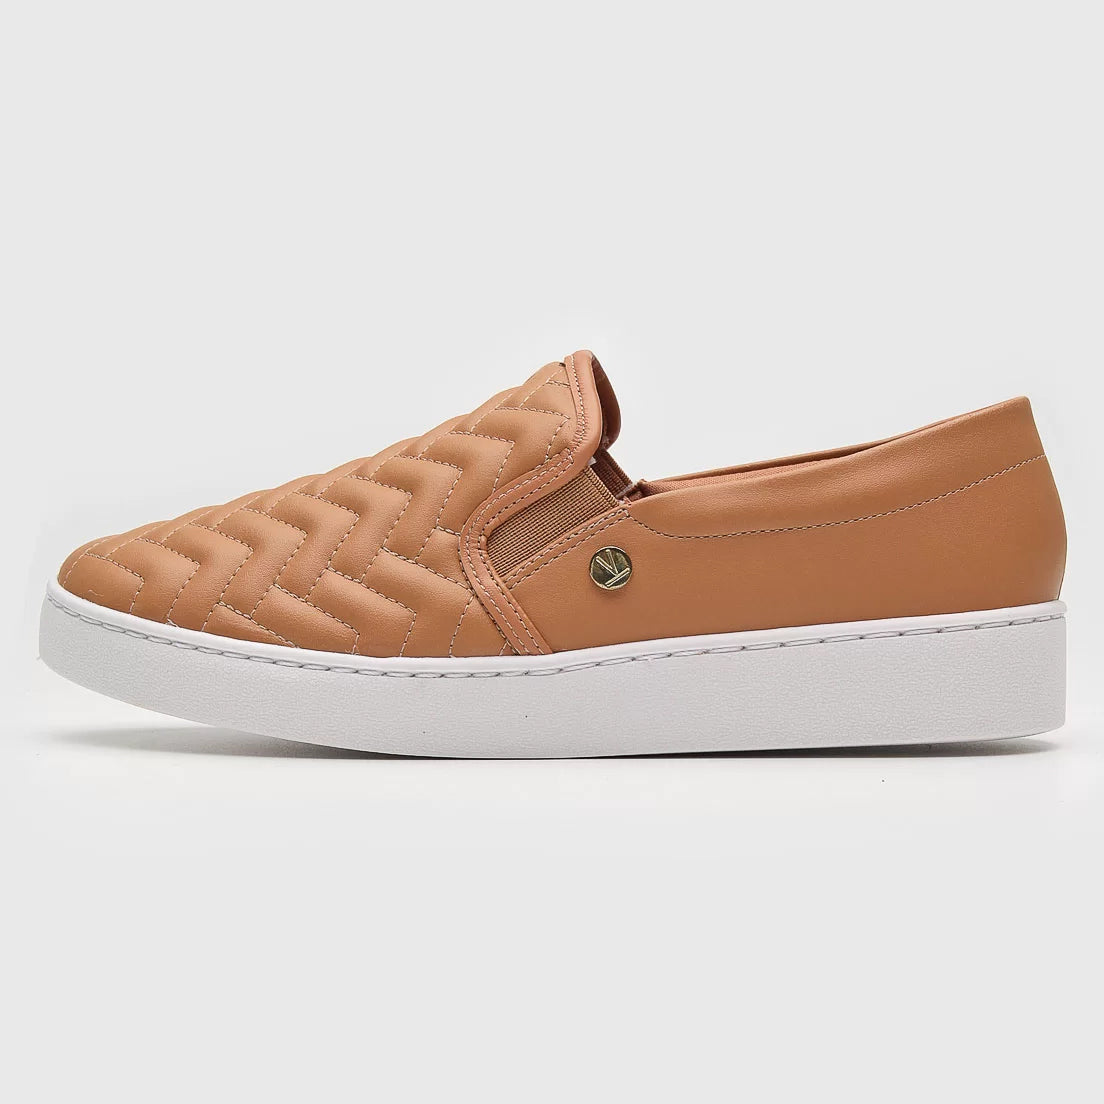 Vizzano 1214-1010 Slip-on Sneaker in Camel Napa